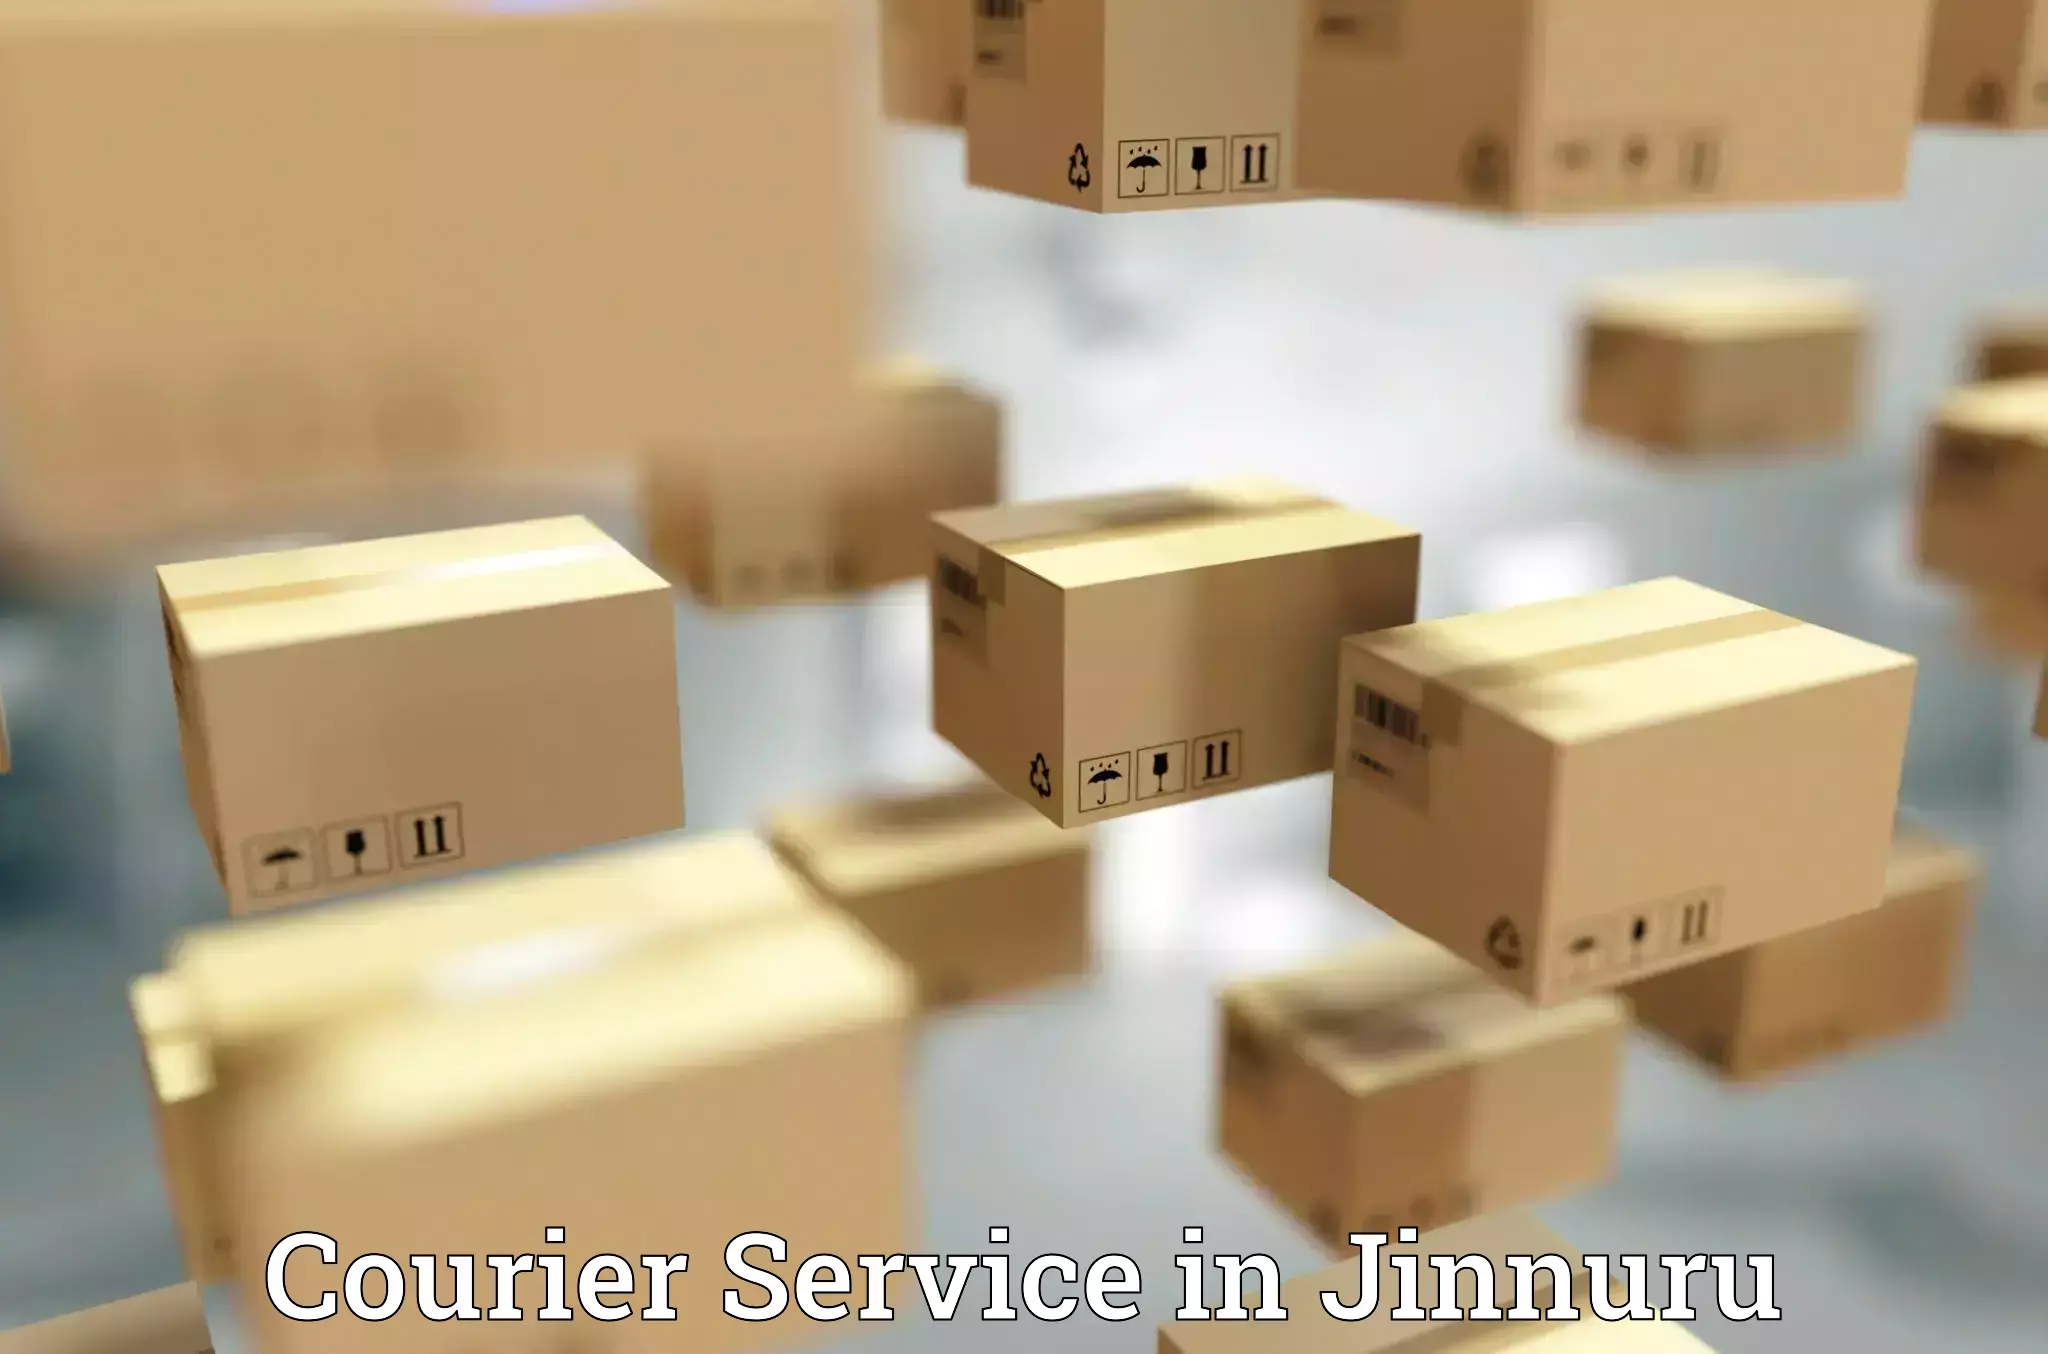 Online package tracking in Jinnuru